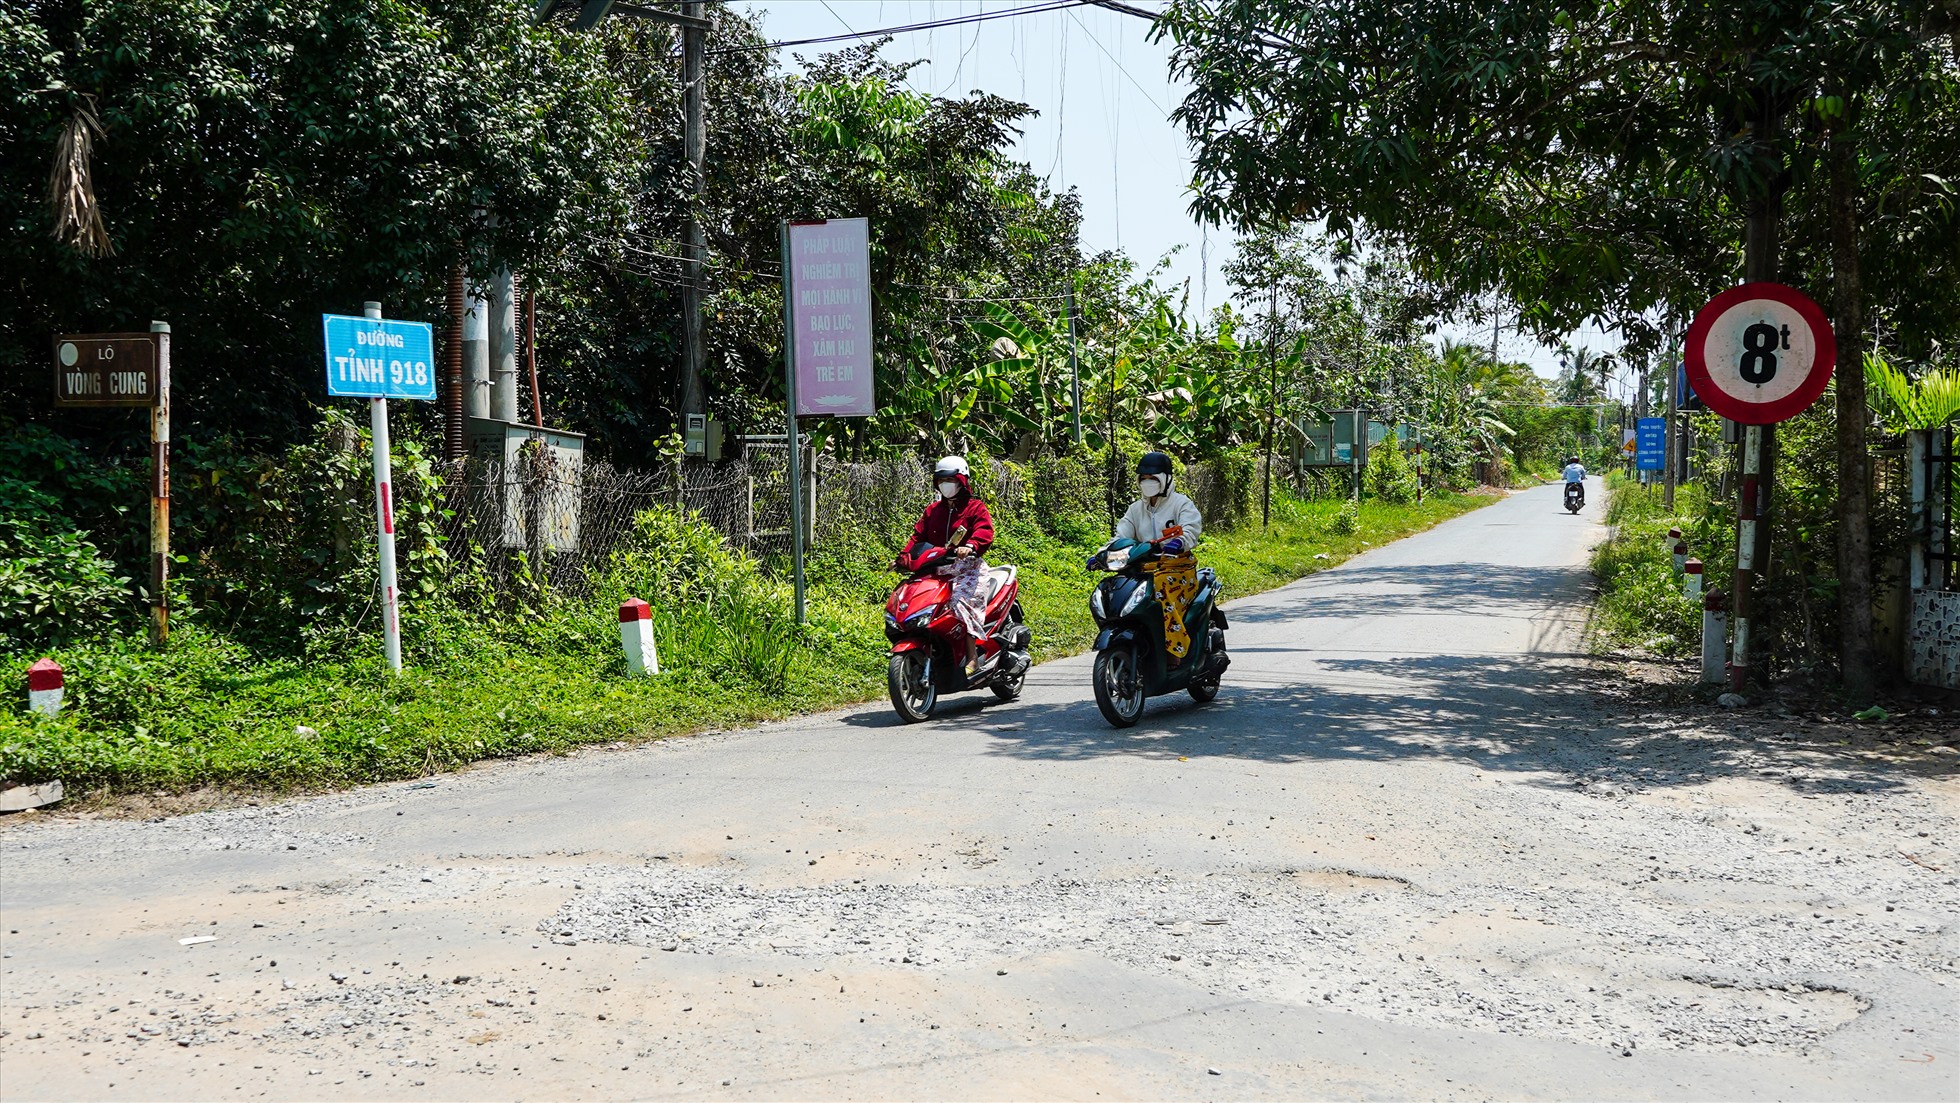 Dự án ĐT918 hoàn thành sẽ kết nối thông suốt giữa QL91, QL91B, ĐT923, đường Nguyễn Văn Cừ, QL61C. Từ đó, phục vụ nhu cầu vận chuyển, phát triển kinh tế - xã hội của địa phương.